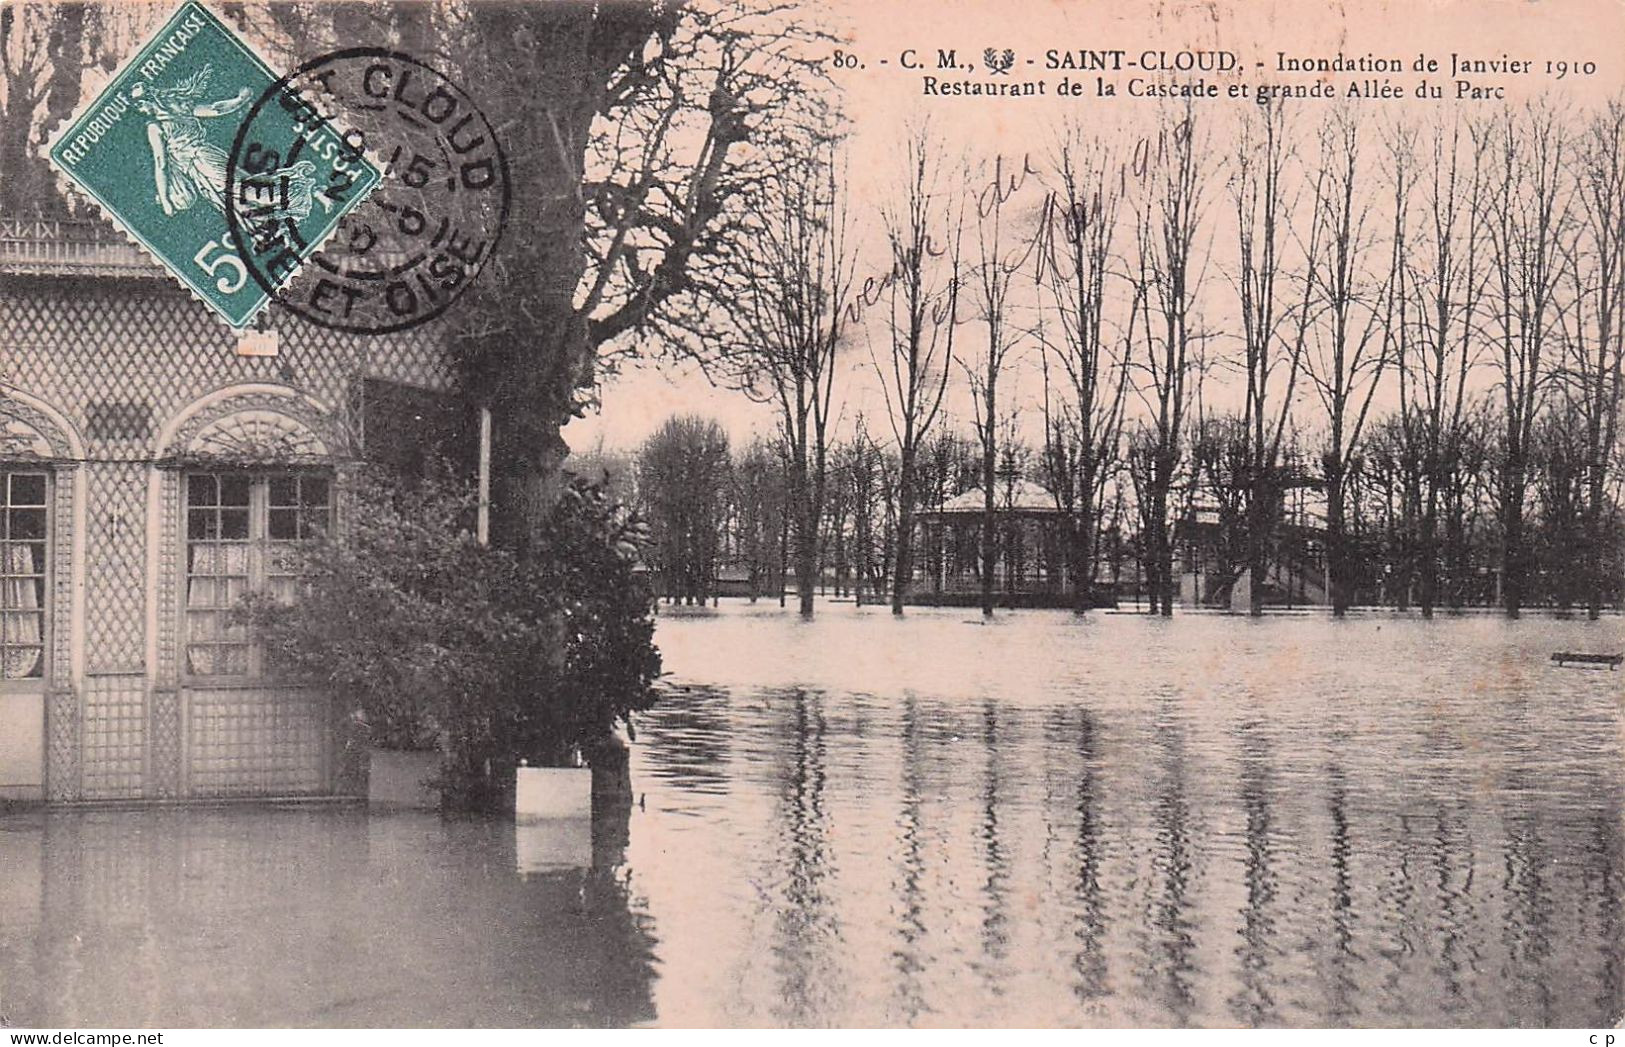 Saint Cloud   - Inondation Janvier 1910 - Restaurant De La Cascade  Et Allée Du Parc -   CPA °J - Saint Cloud